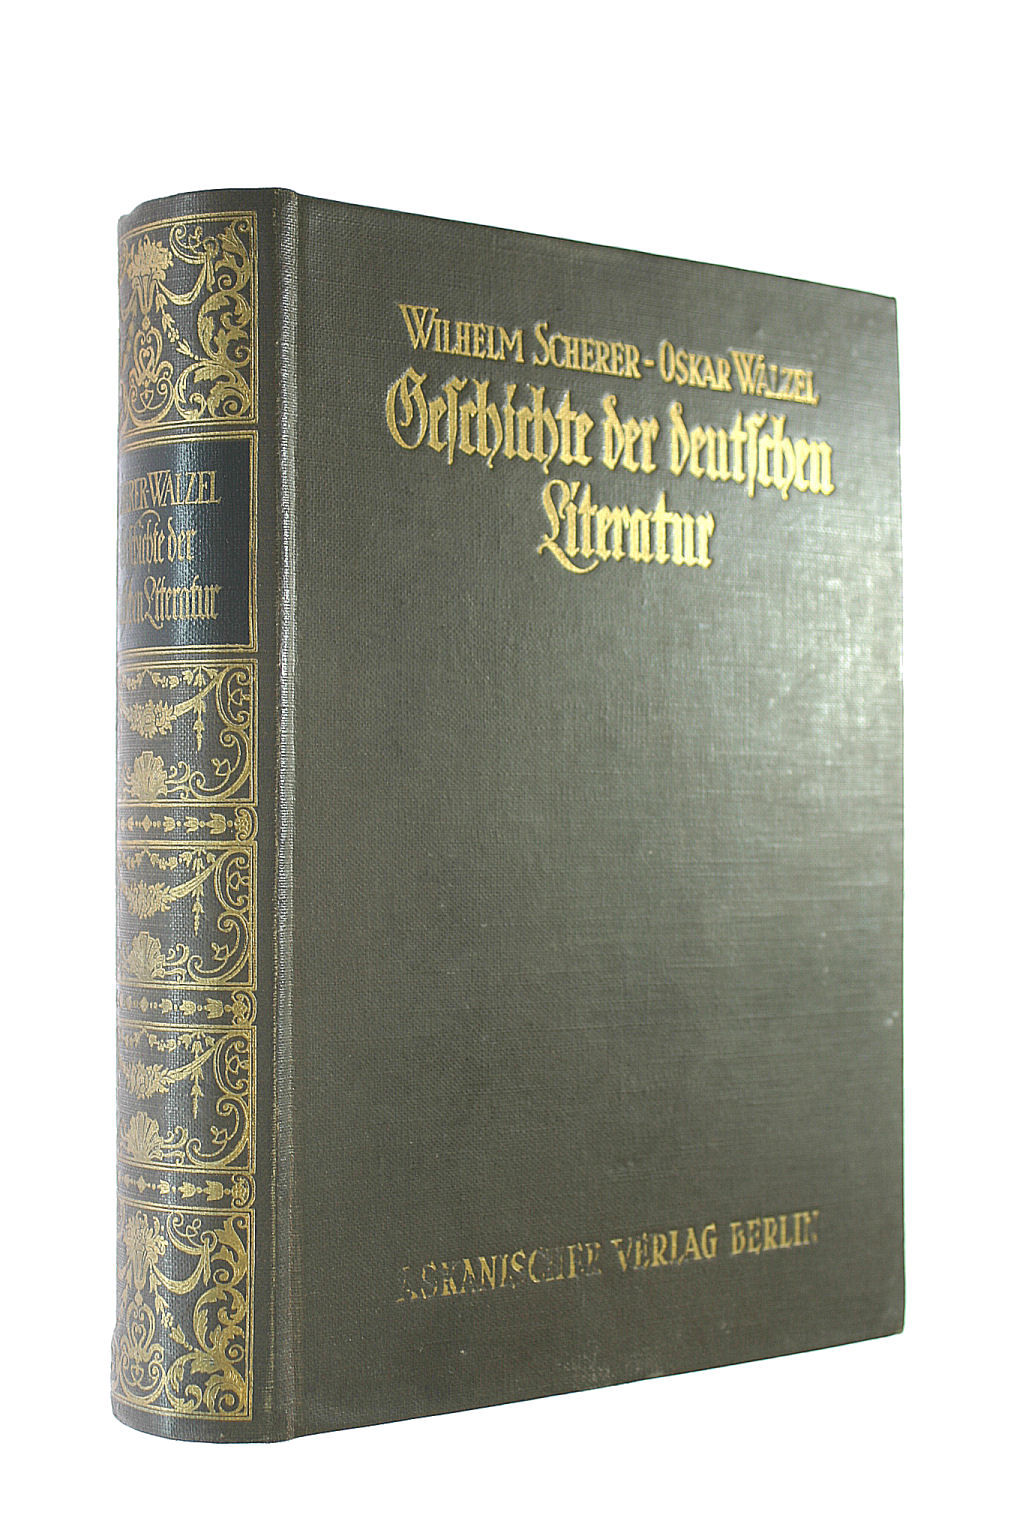 SCHERER WILHELM UND OSKAR WALZEL [AUTOR] - Geschichte der deutschen Literatur Mit einer Bibliographie von Josef Korner